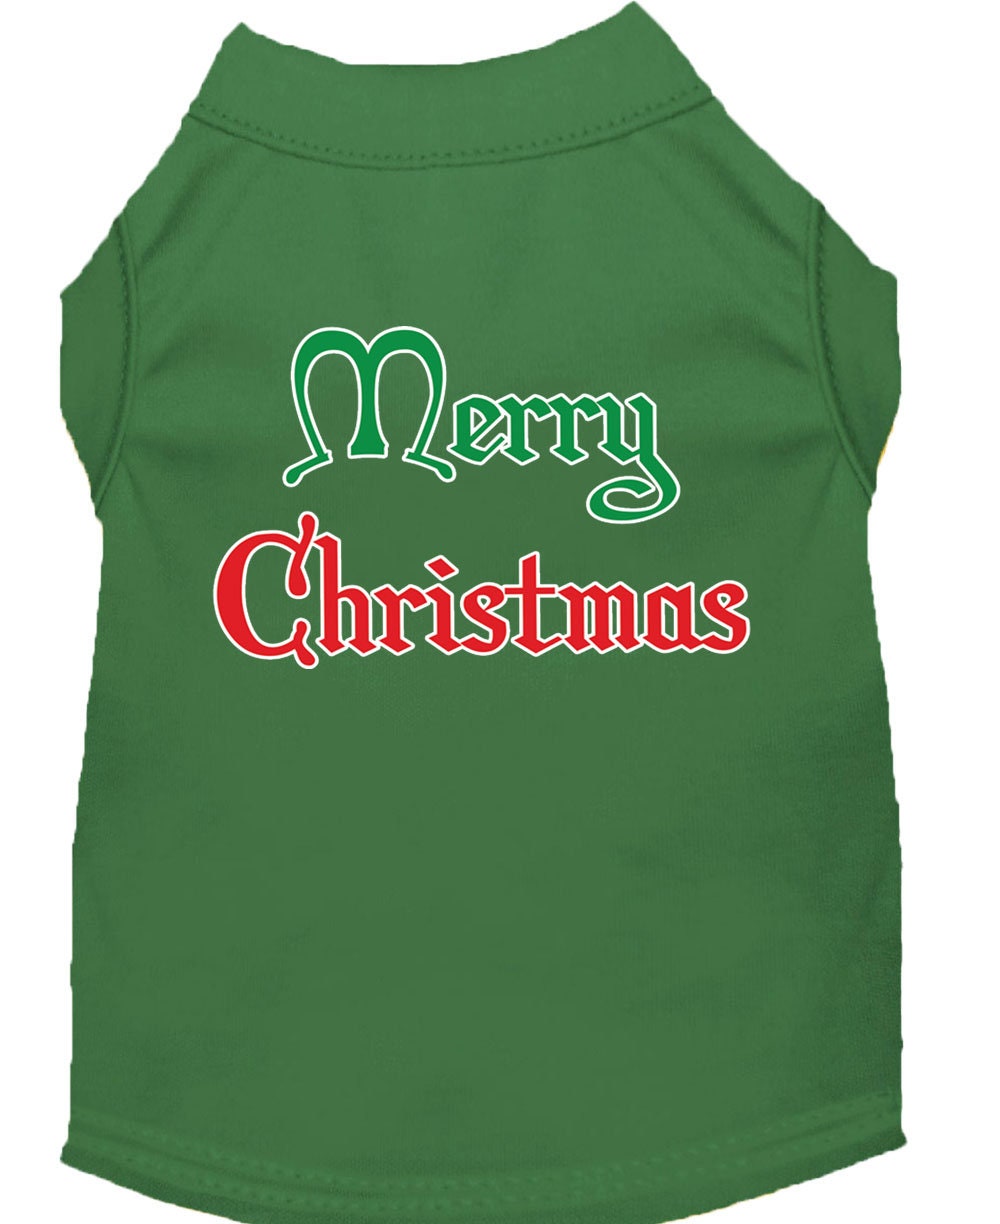 Christmas Screenprinted Dog Shirt, "Merry Christmas"